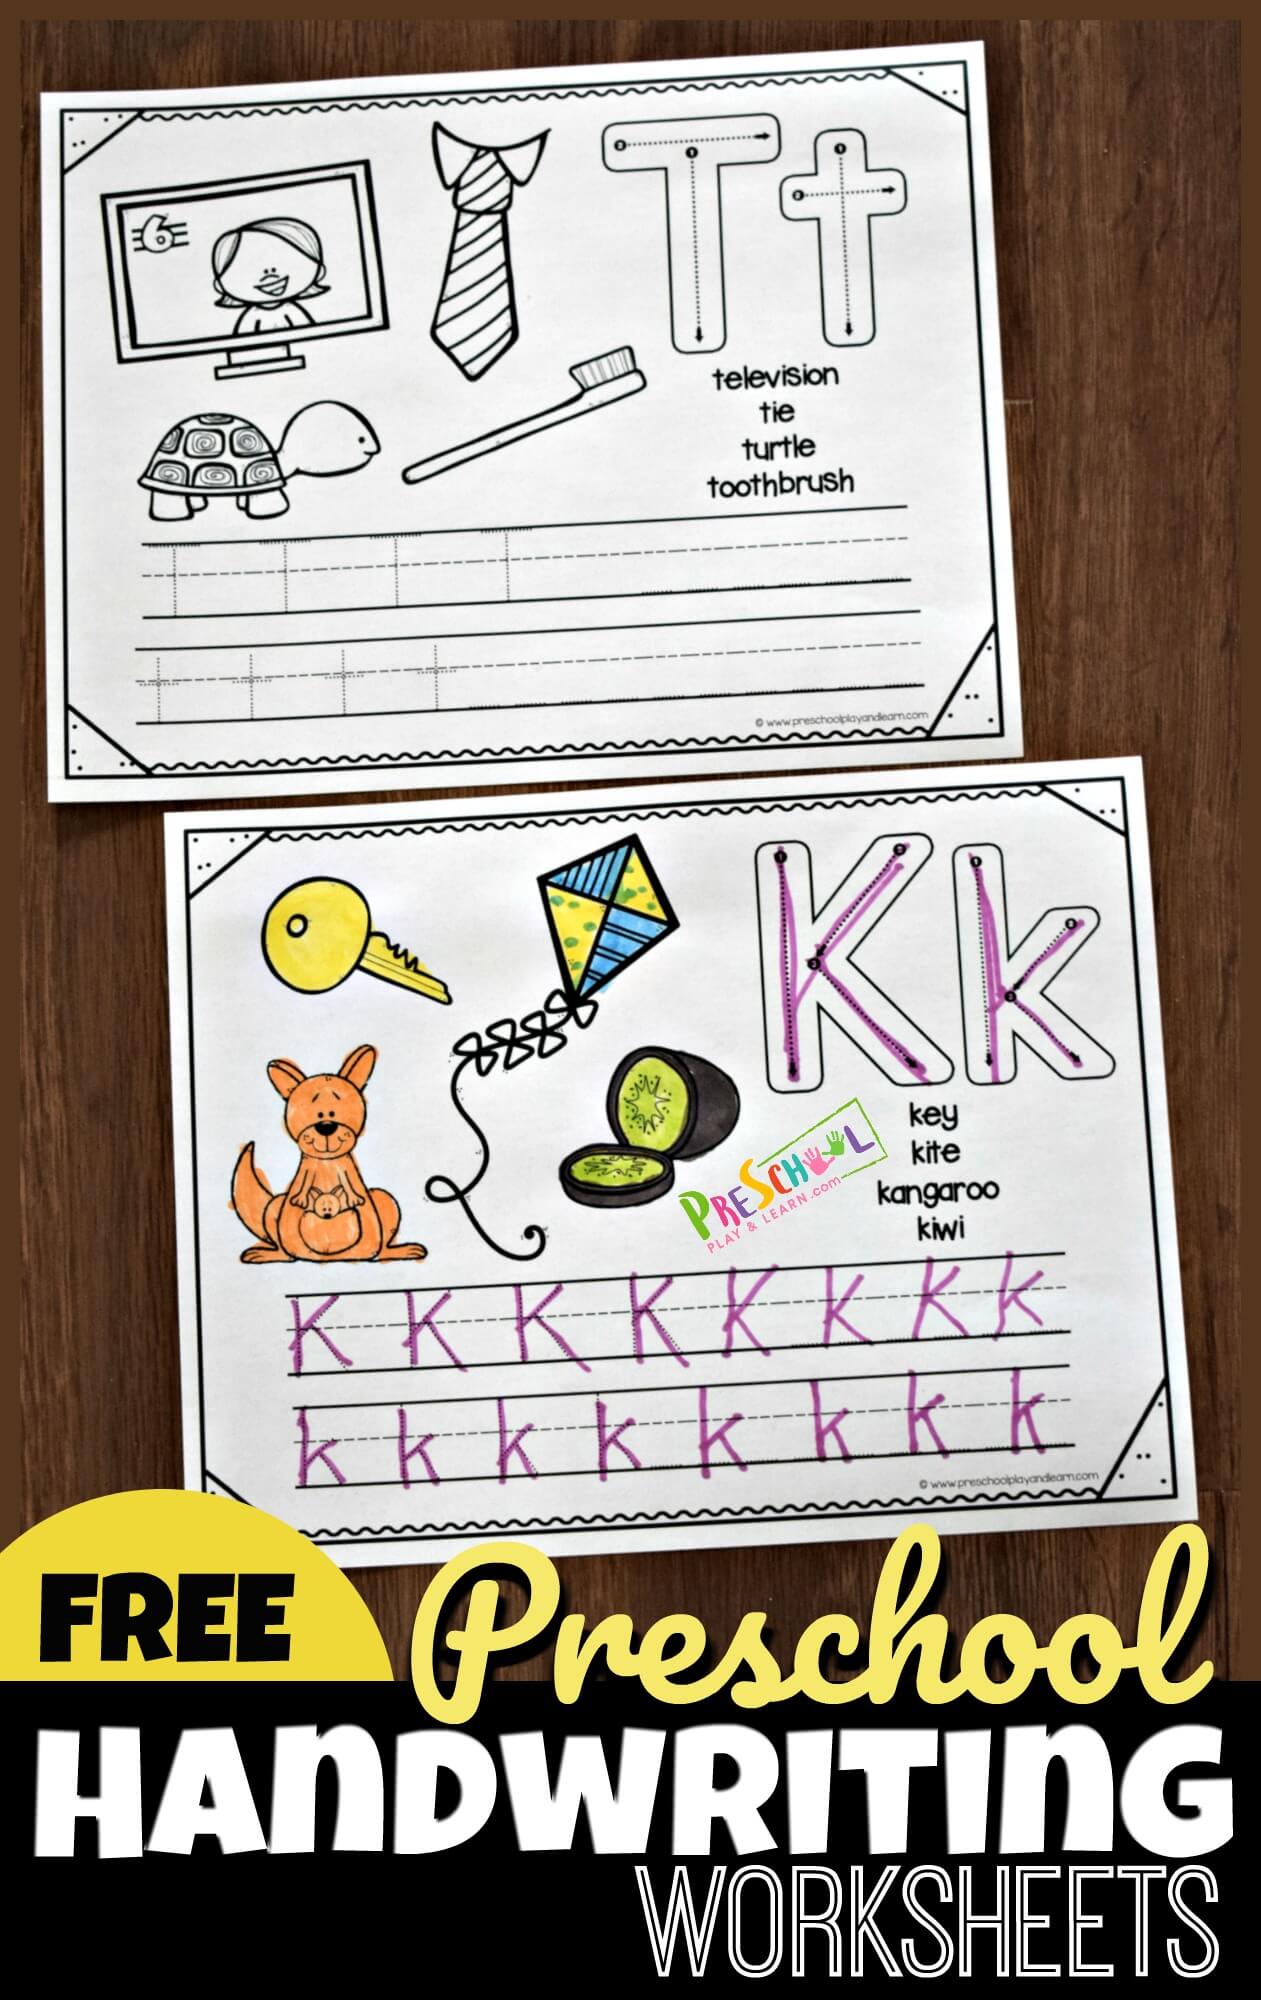 free-printable-preschool-worksheets-tracing-letters